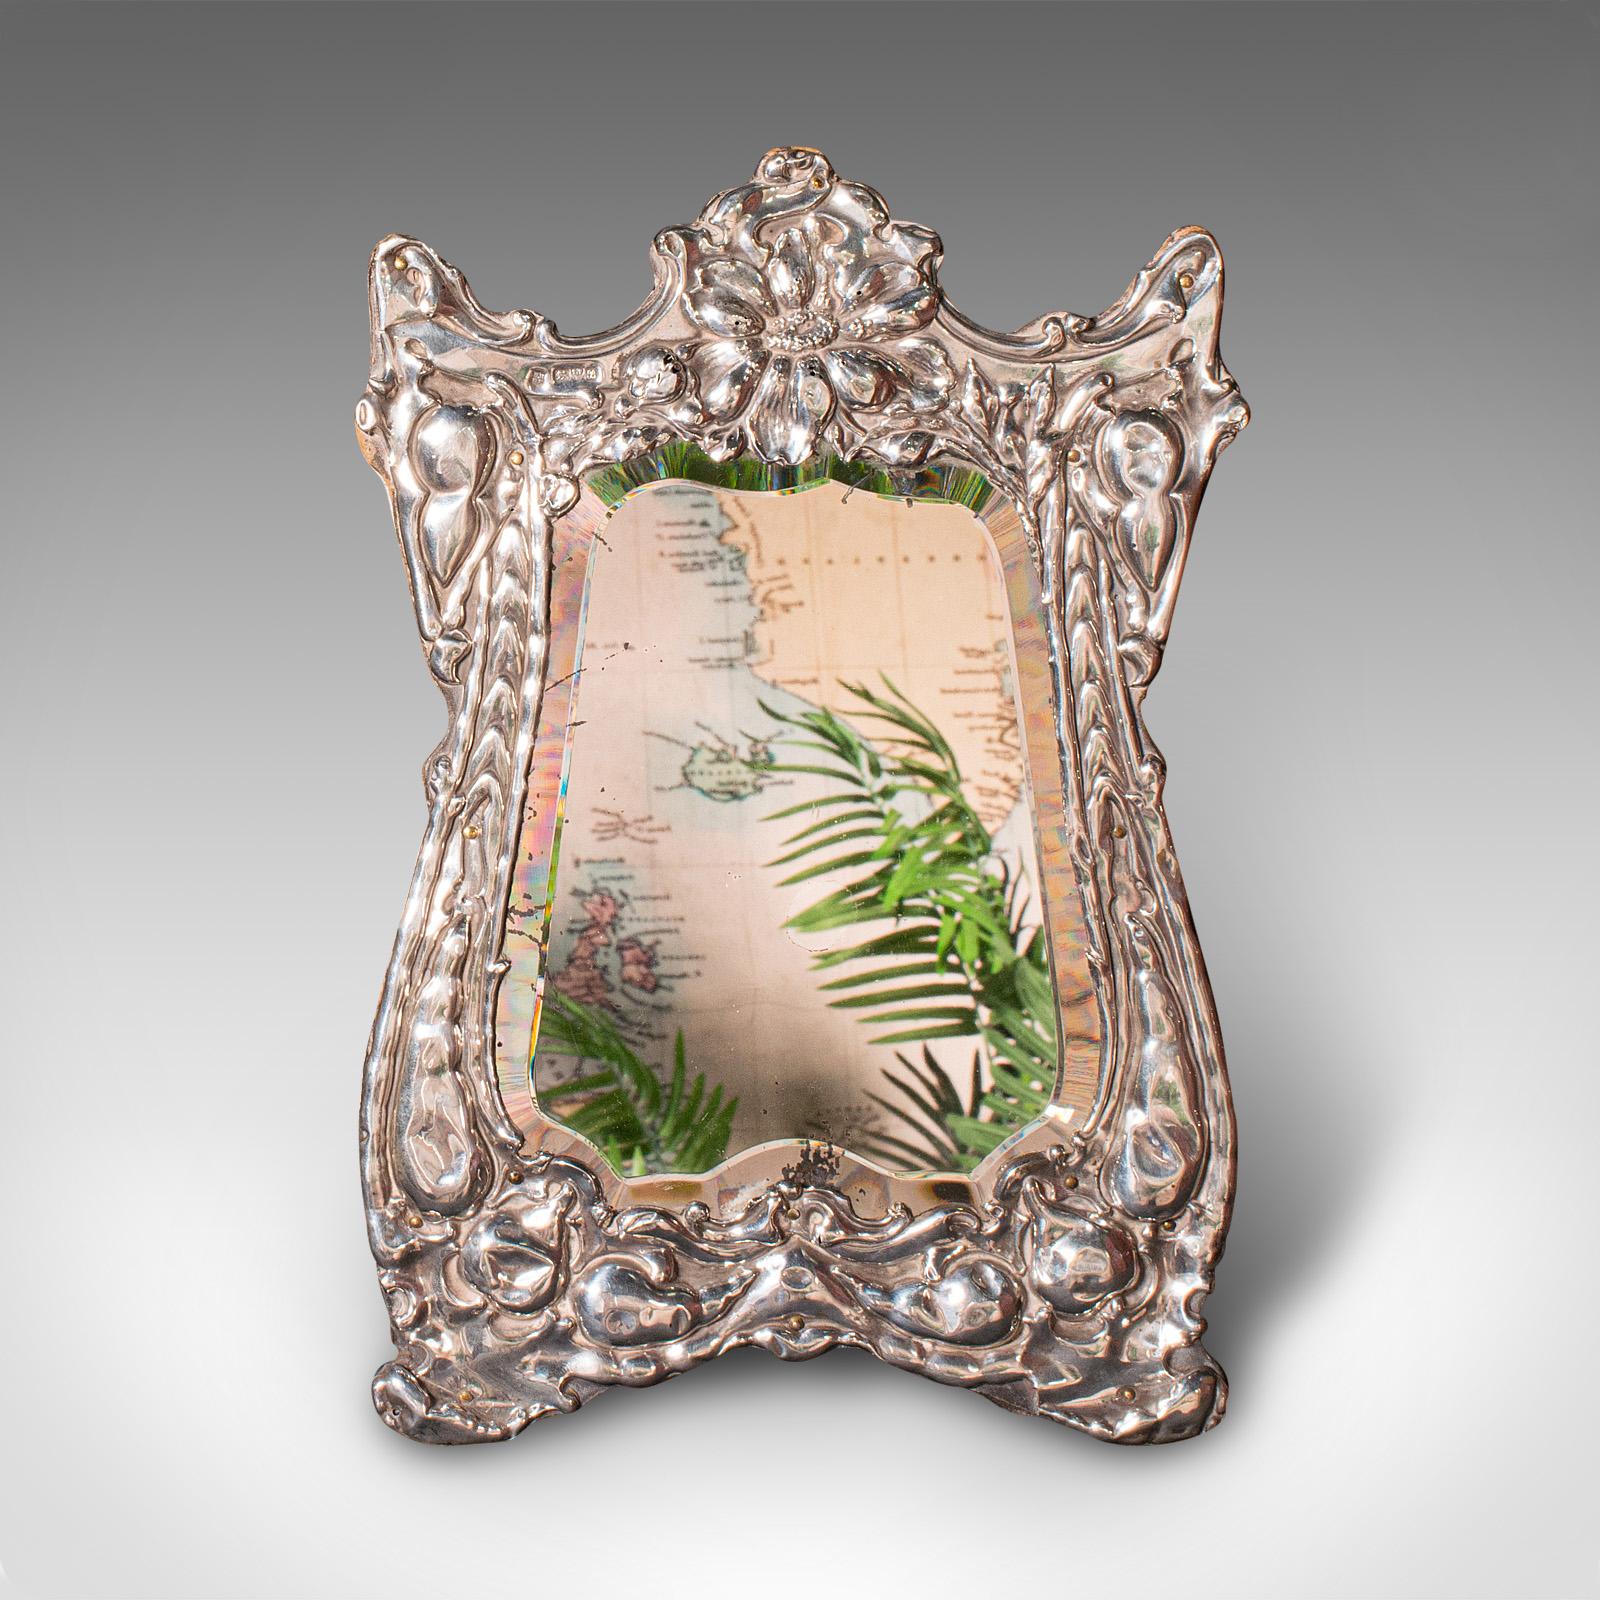 Dies ist ein antiker Schminkspiegel. Ein englischer Frisierspiegel aus Sterlingsilber und Glas aus der Edwardianischen Periode, um 1902.

Wunderschöner Spiegel mit toller Tonalität und Reflexion
Zeigt eine wünschenswerte gealterte Patina und in